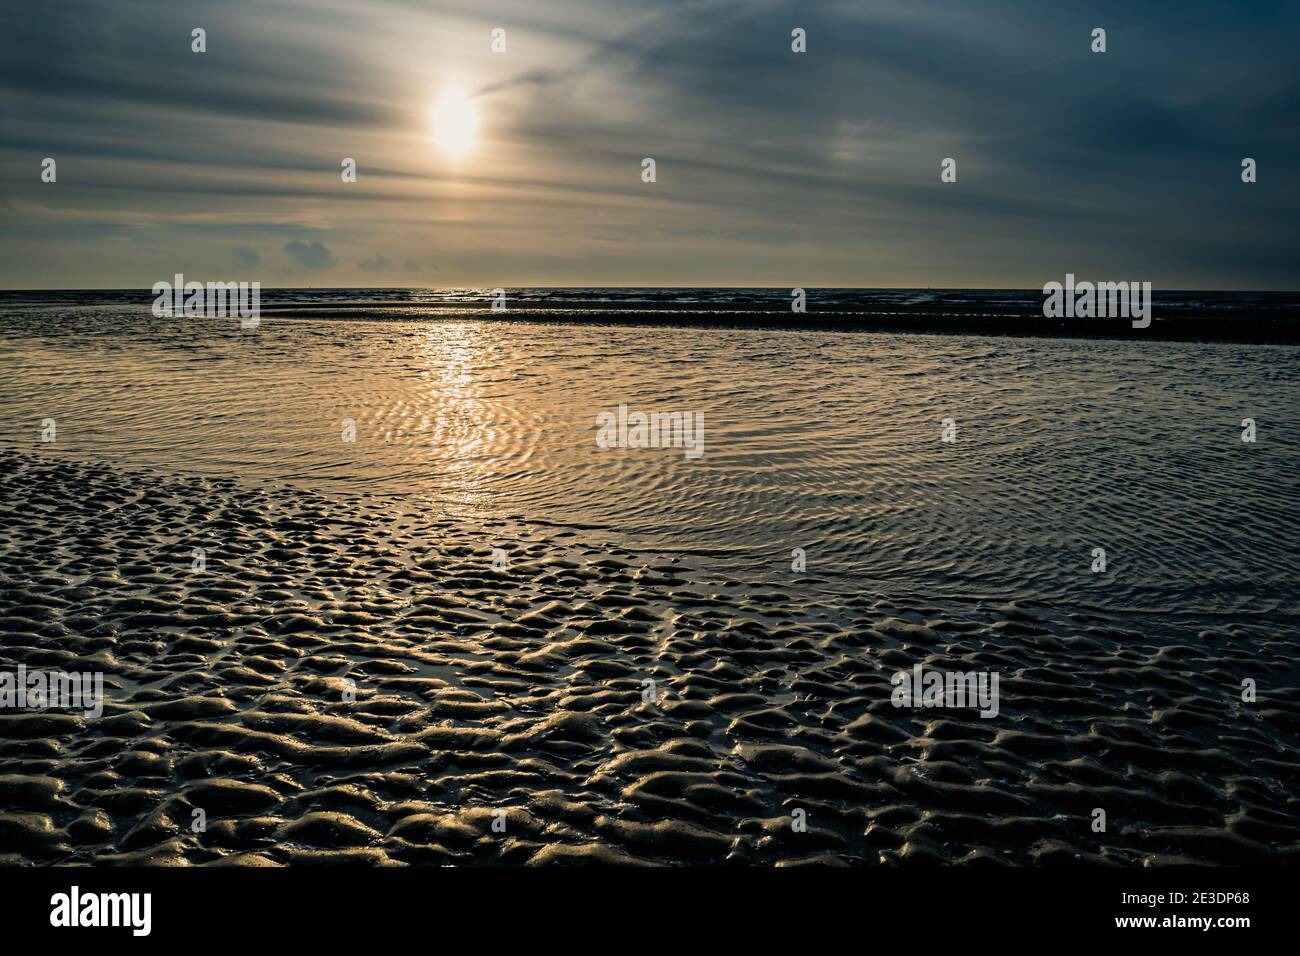 Setting sun behind sandbank at low tide at the beach Stock Photo